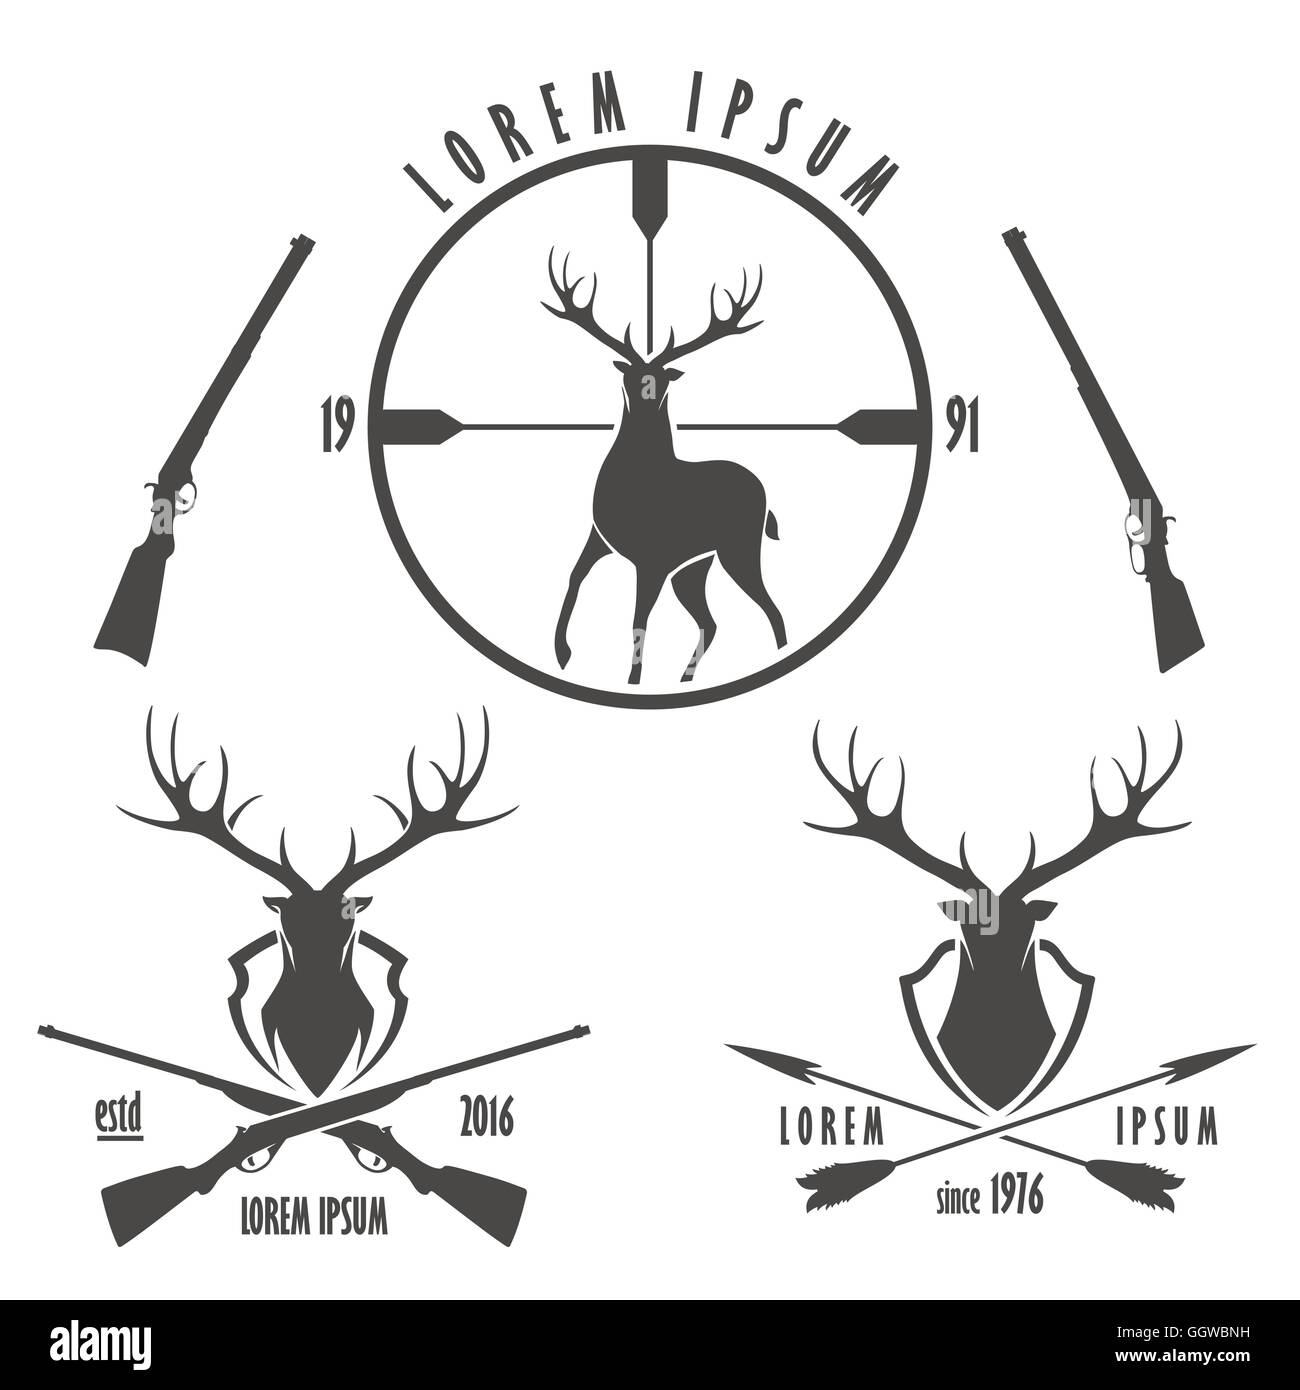 Set of deer hunting emblems. Silhouette and head of deer, target, crossed guns and arrows. Stock Vector